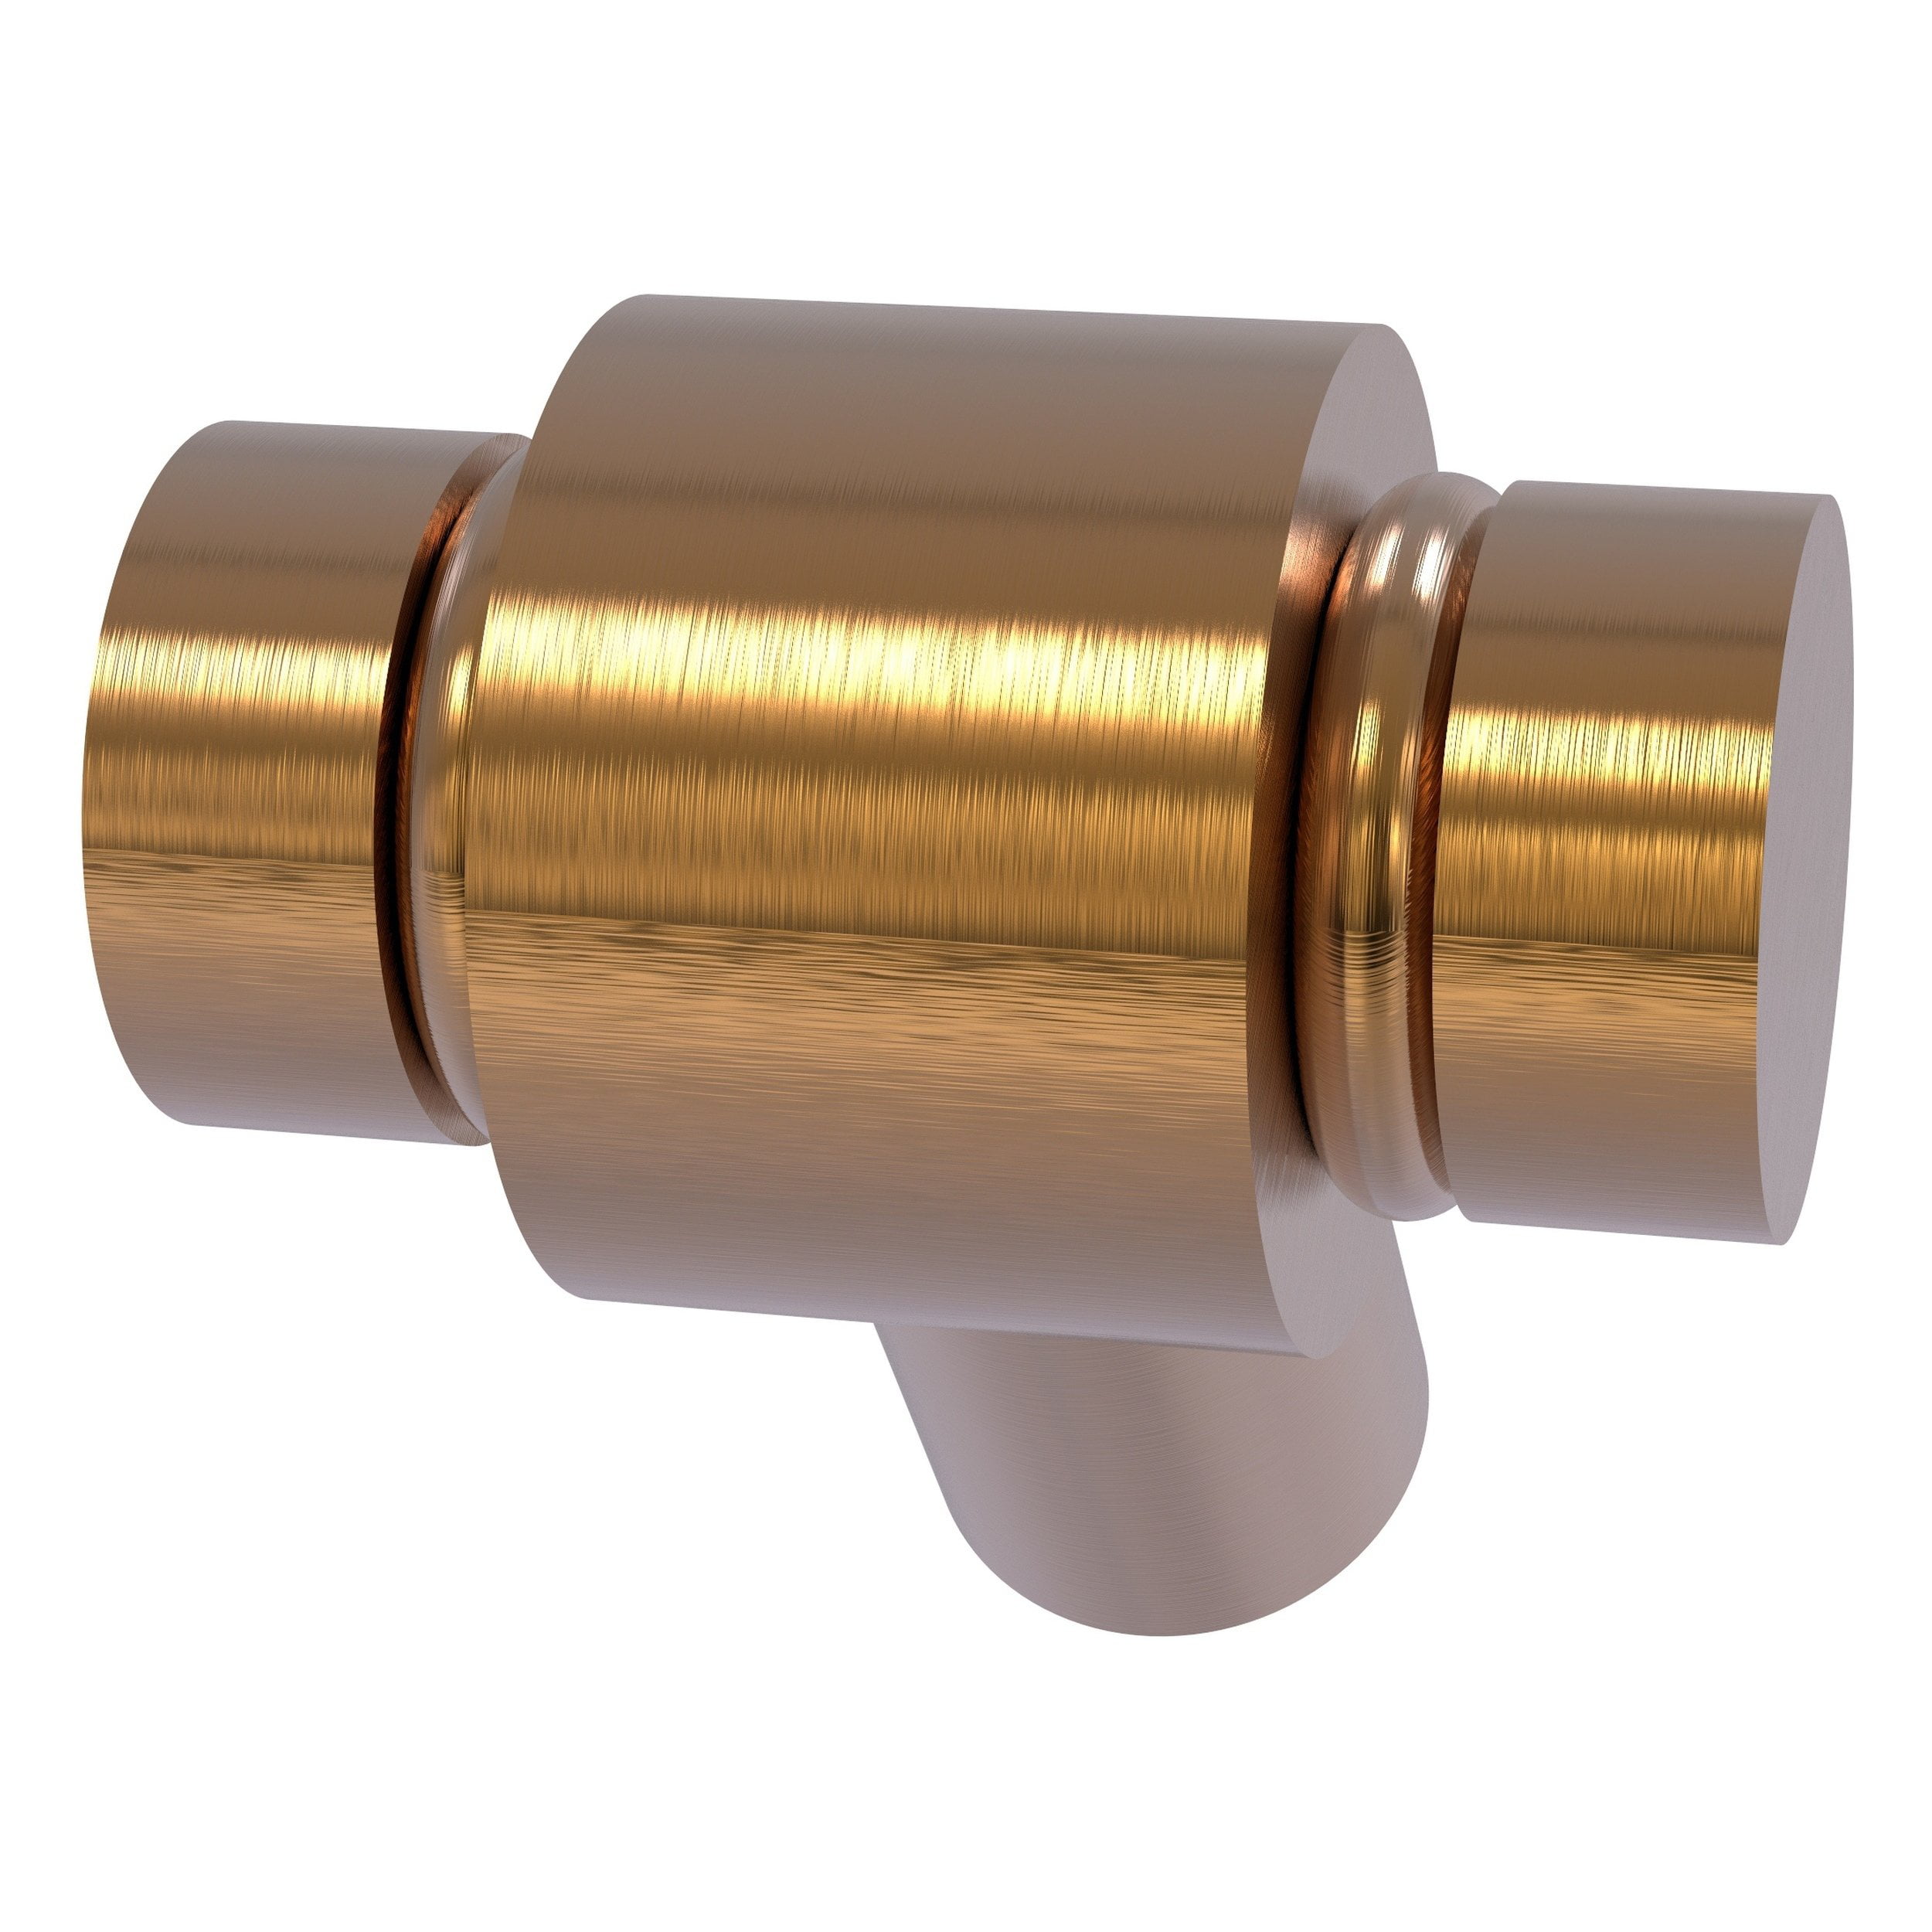 Polished Brass Allied Brass K-10-PB 1-1/8 Inch Cabinet Knob 